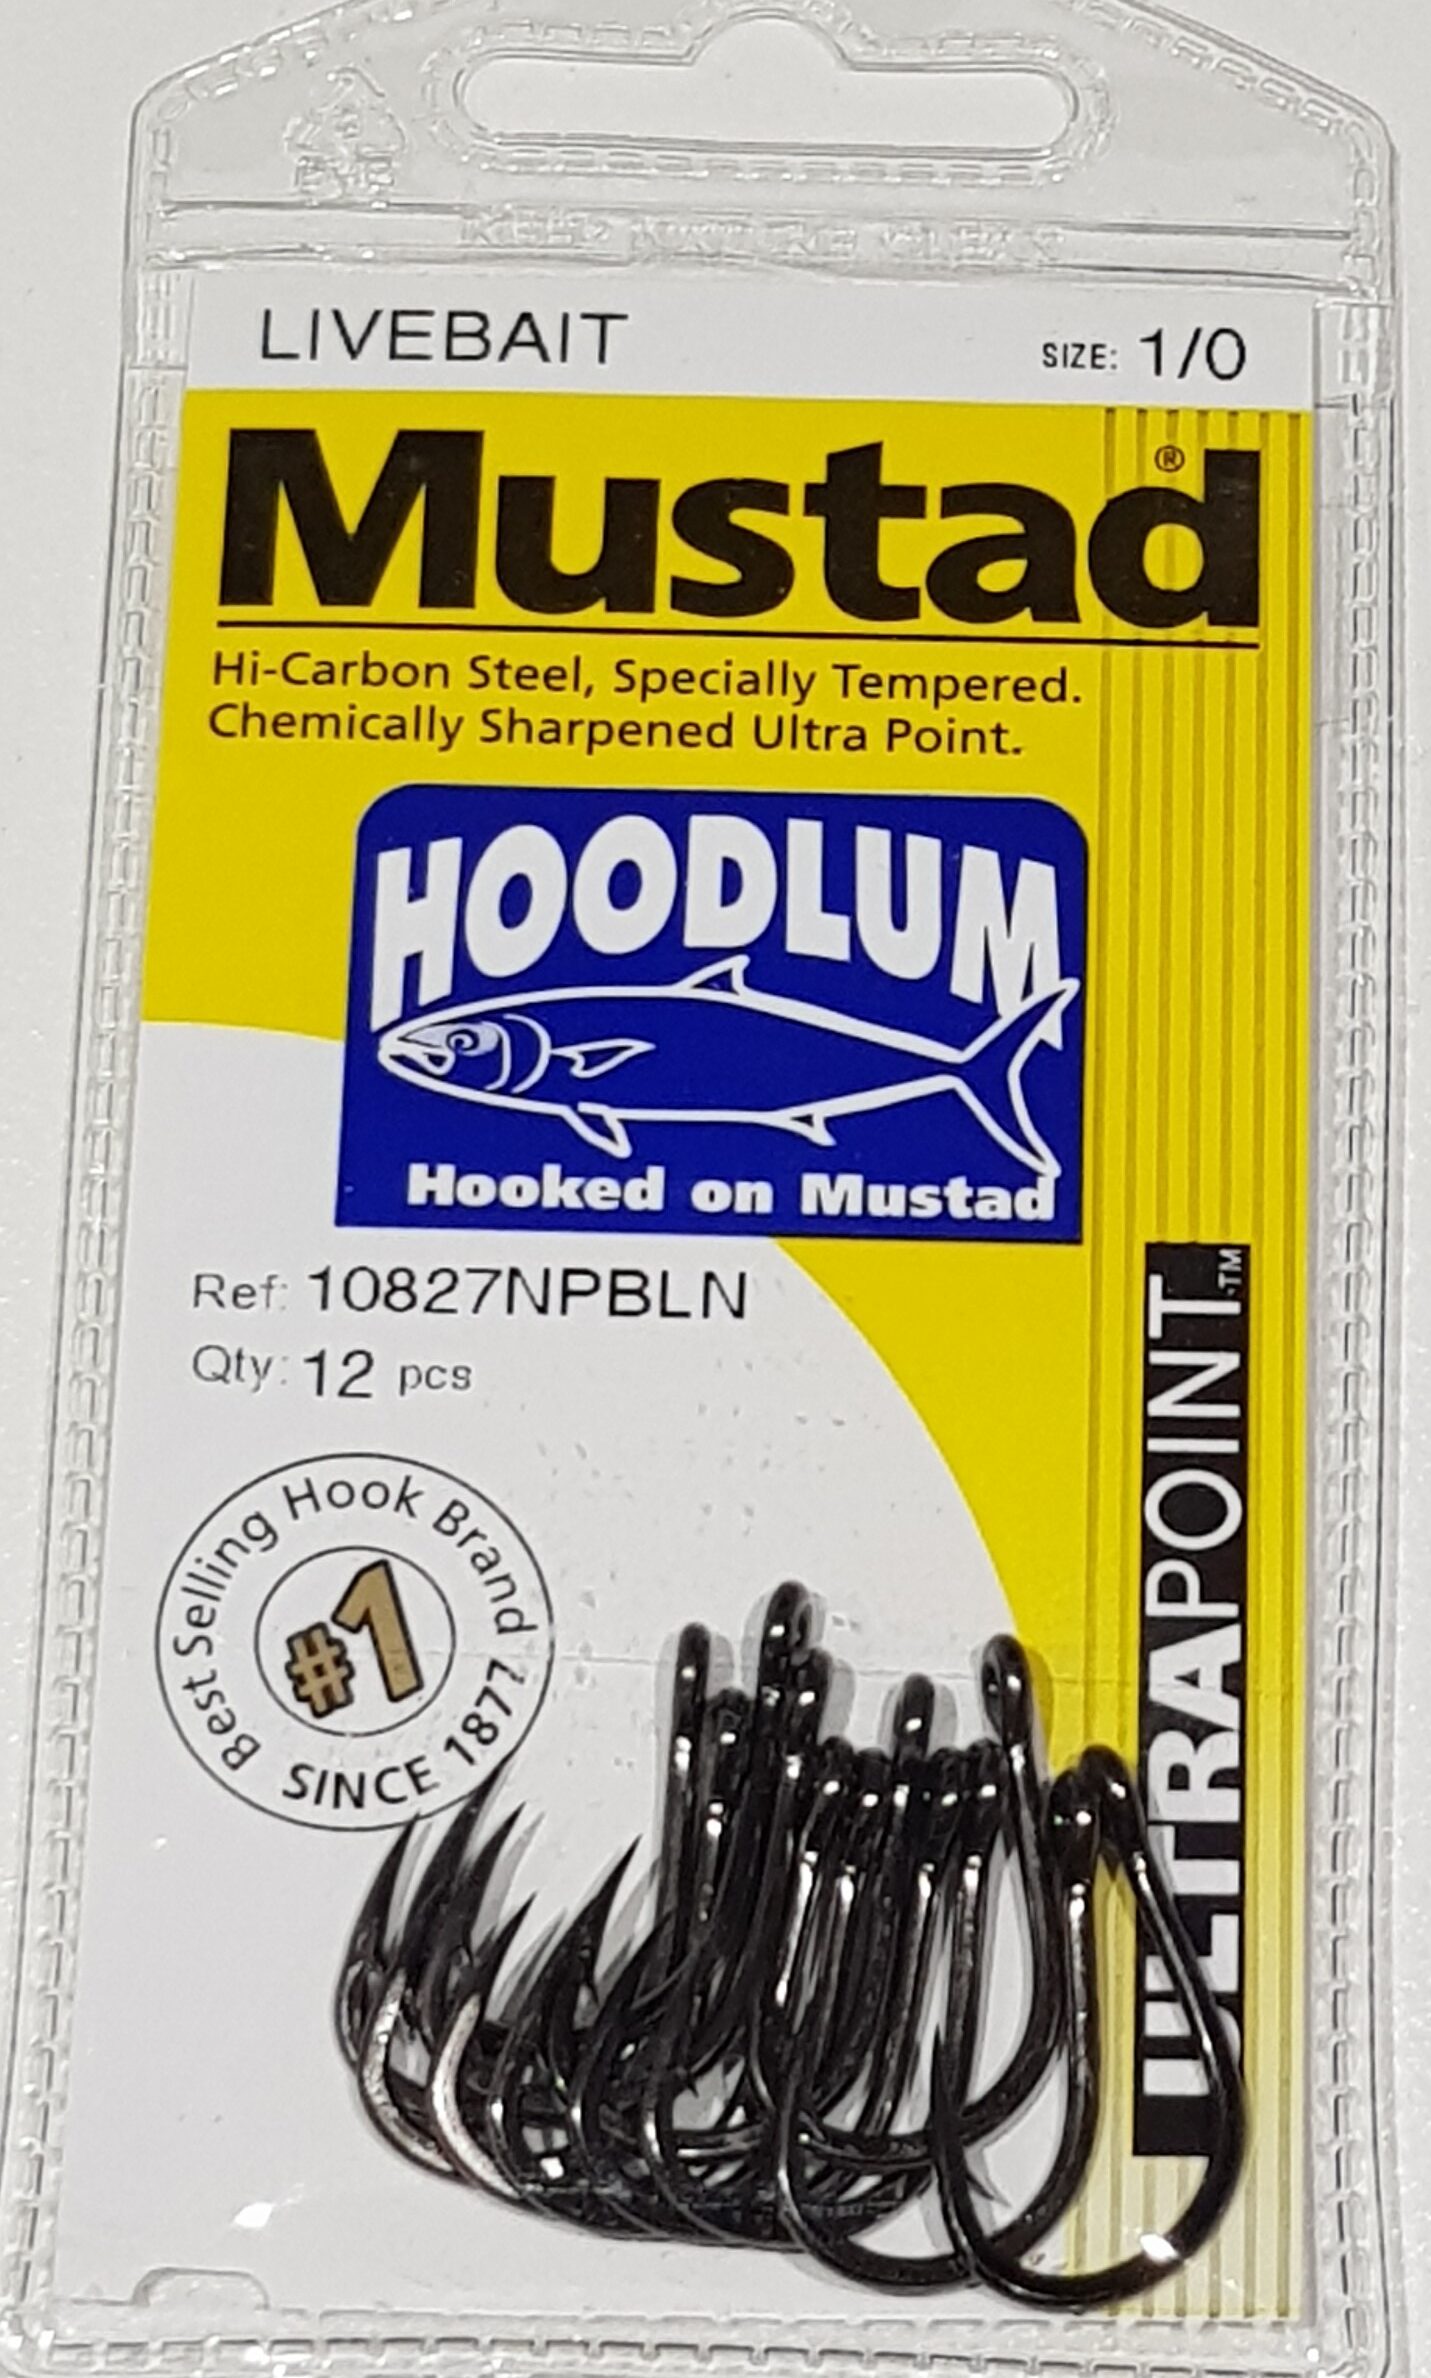 Mustad Hoodlum Live Bait Fishing Hooks 1/0